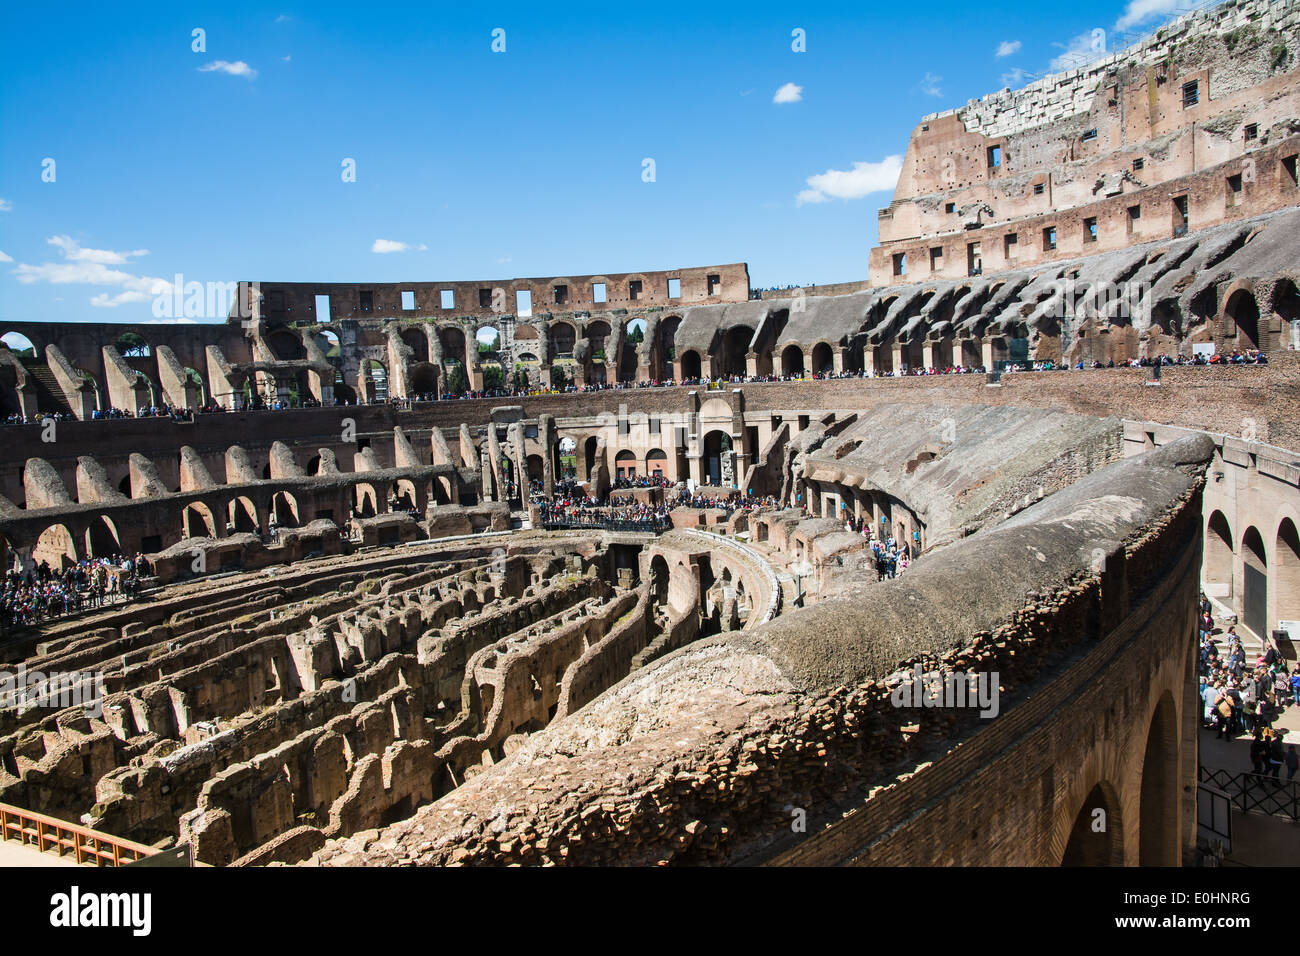 Roma,Italia-Aprile 17,2014:persone ammirare l'interno dell'antica Colosseo romano nella giornata soleggiata nel centro di Roma Foto Stock